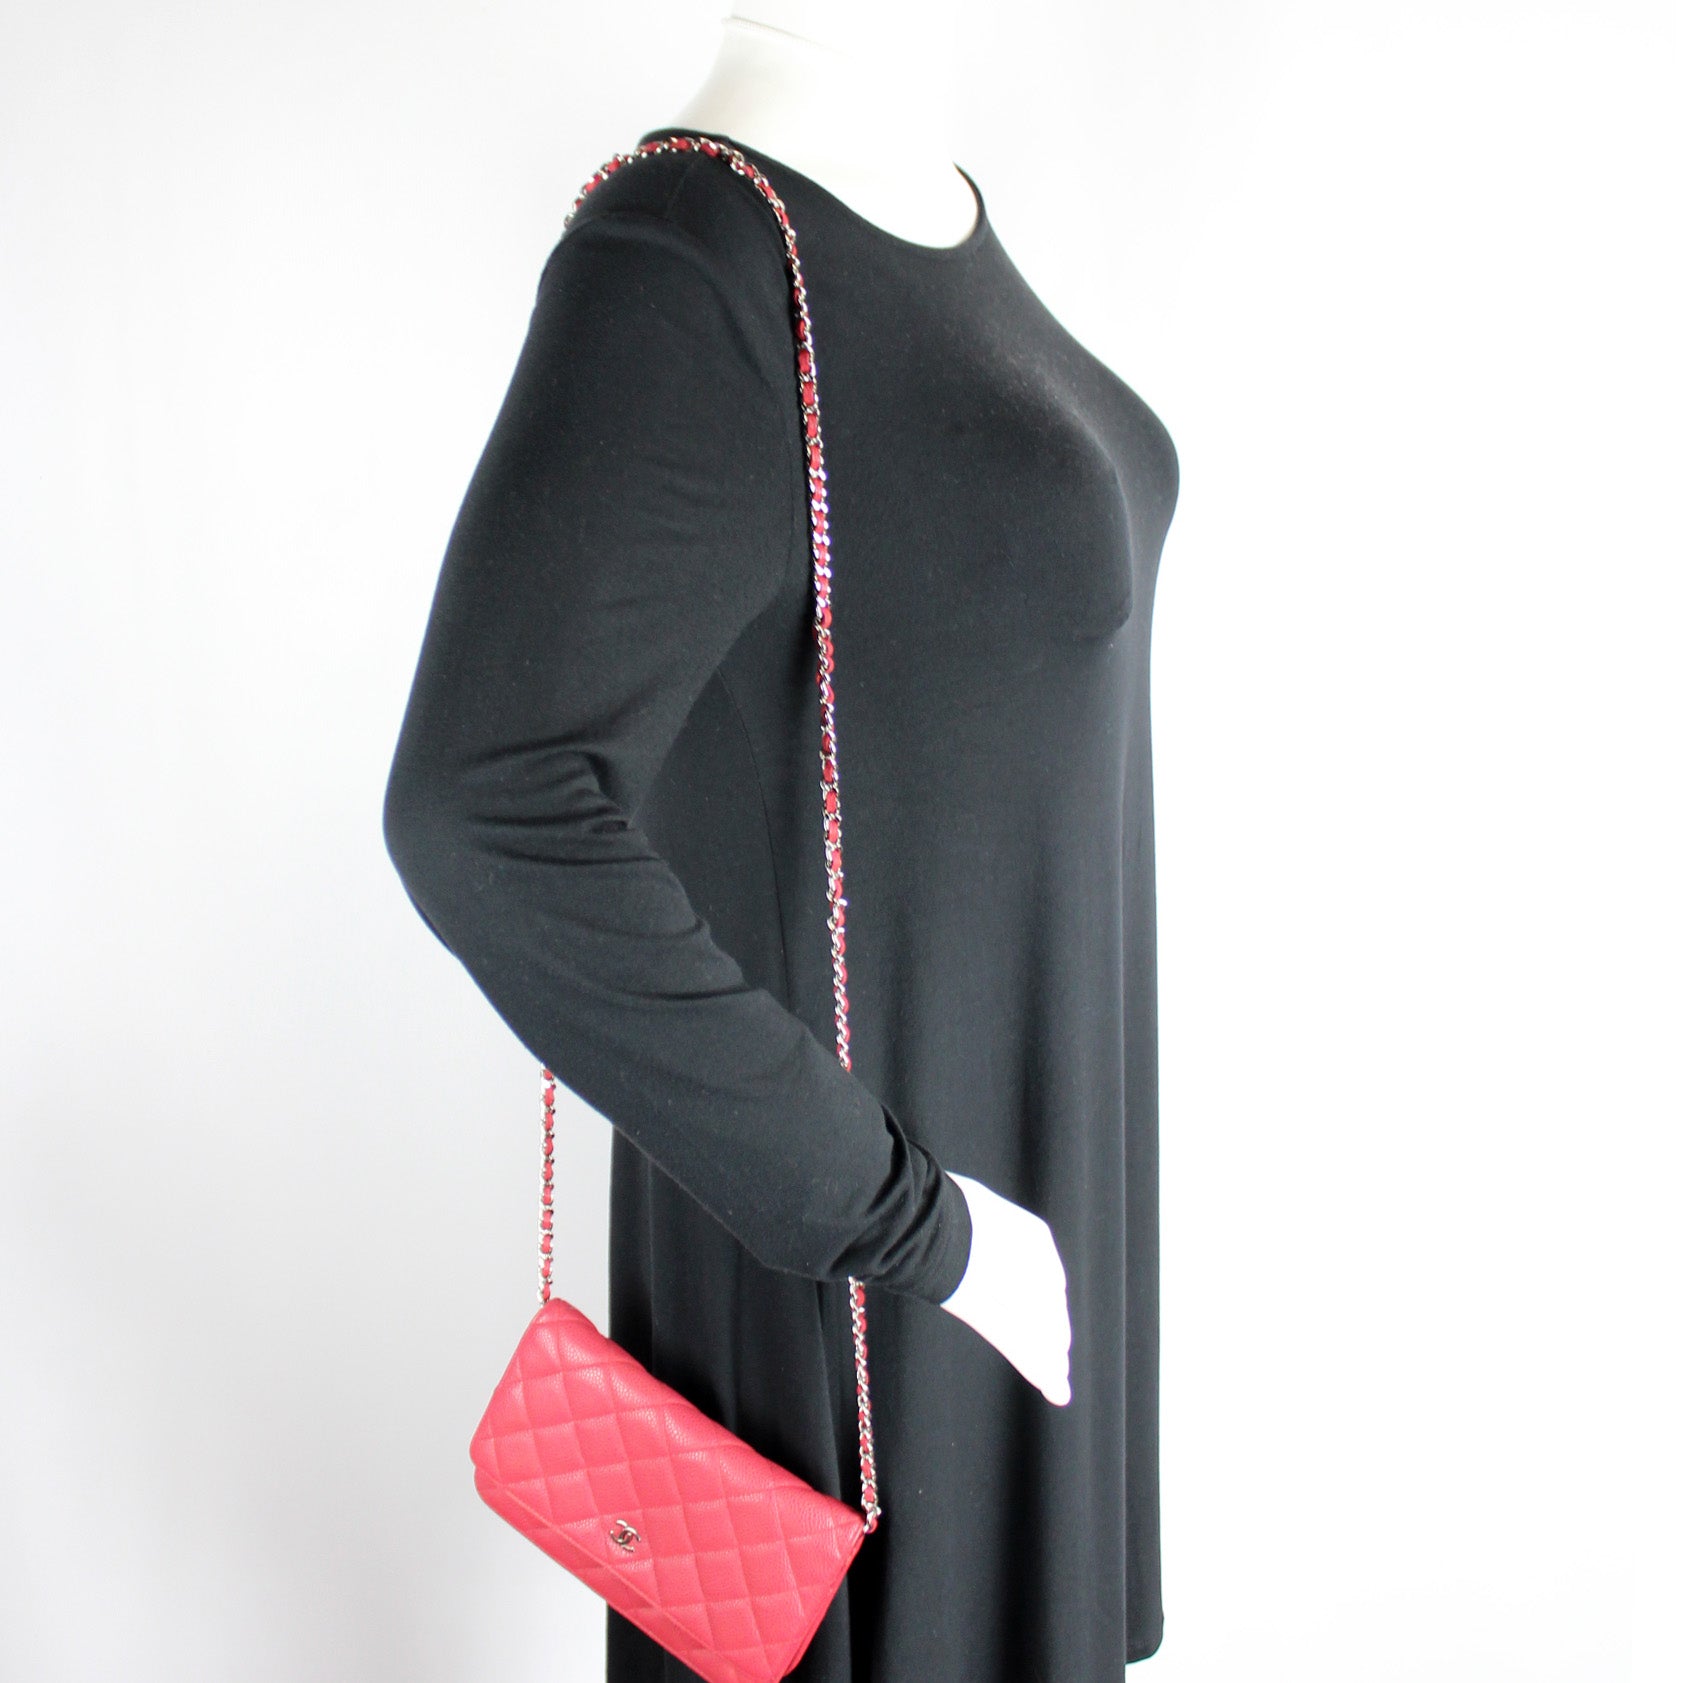 Sell To Us – Keeks Designer Handbags